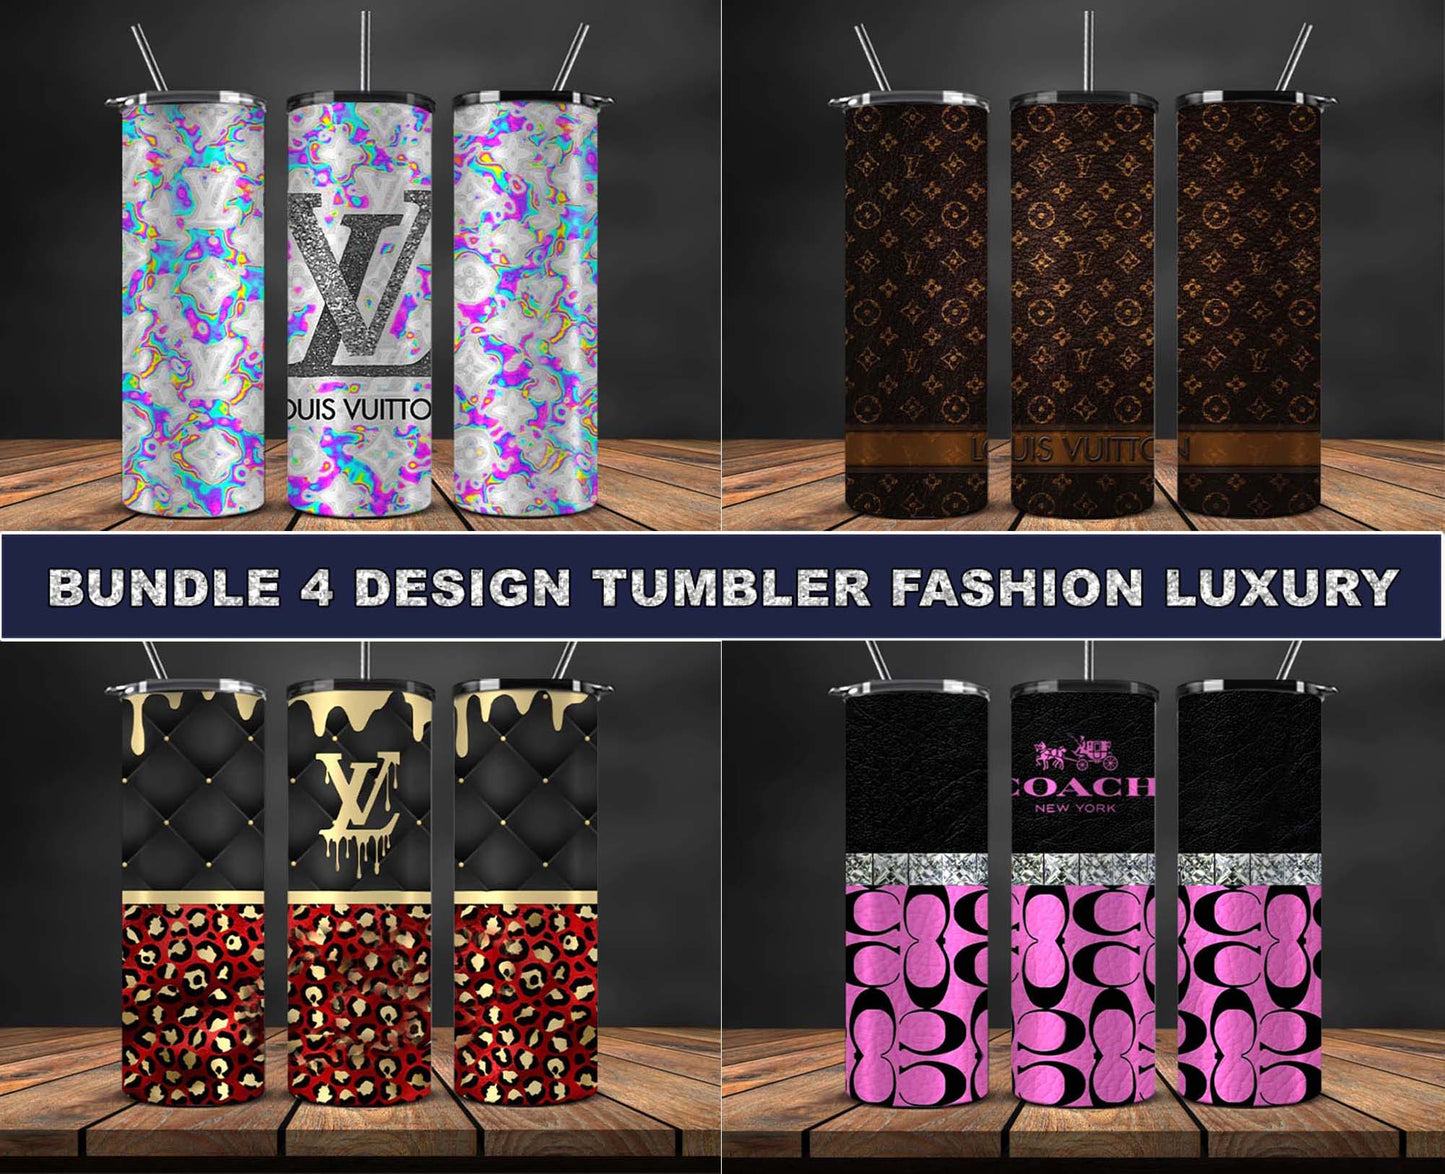 Bundle 4 Design Tumbler Fashion, Luxury Designer Tumbler Design,Digital Luxury Fashion 20oz Tumbler Wrap,Tumbler Logo Brand 112